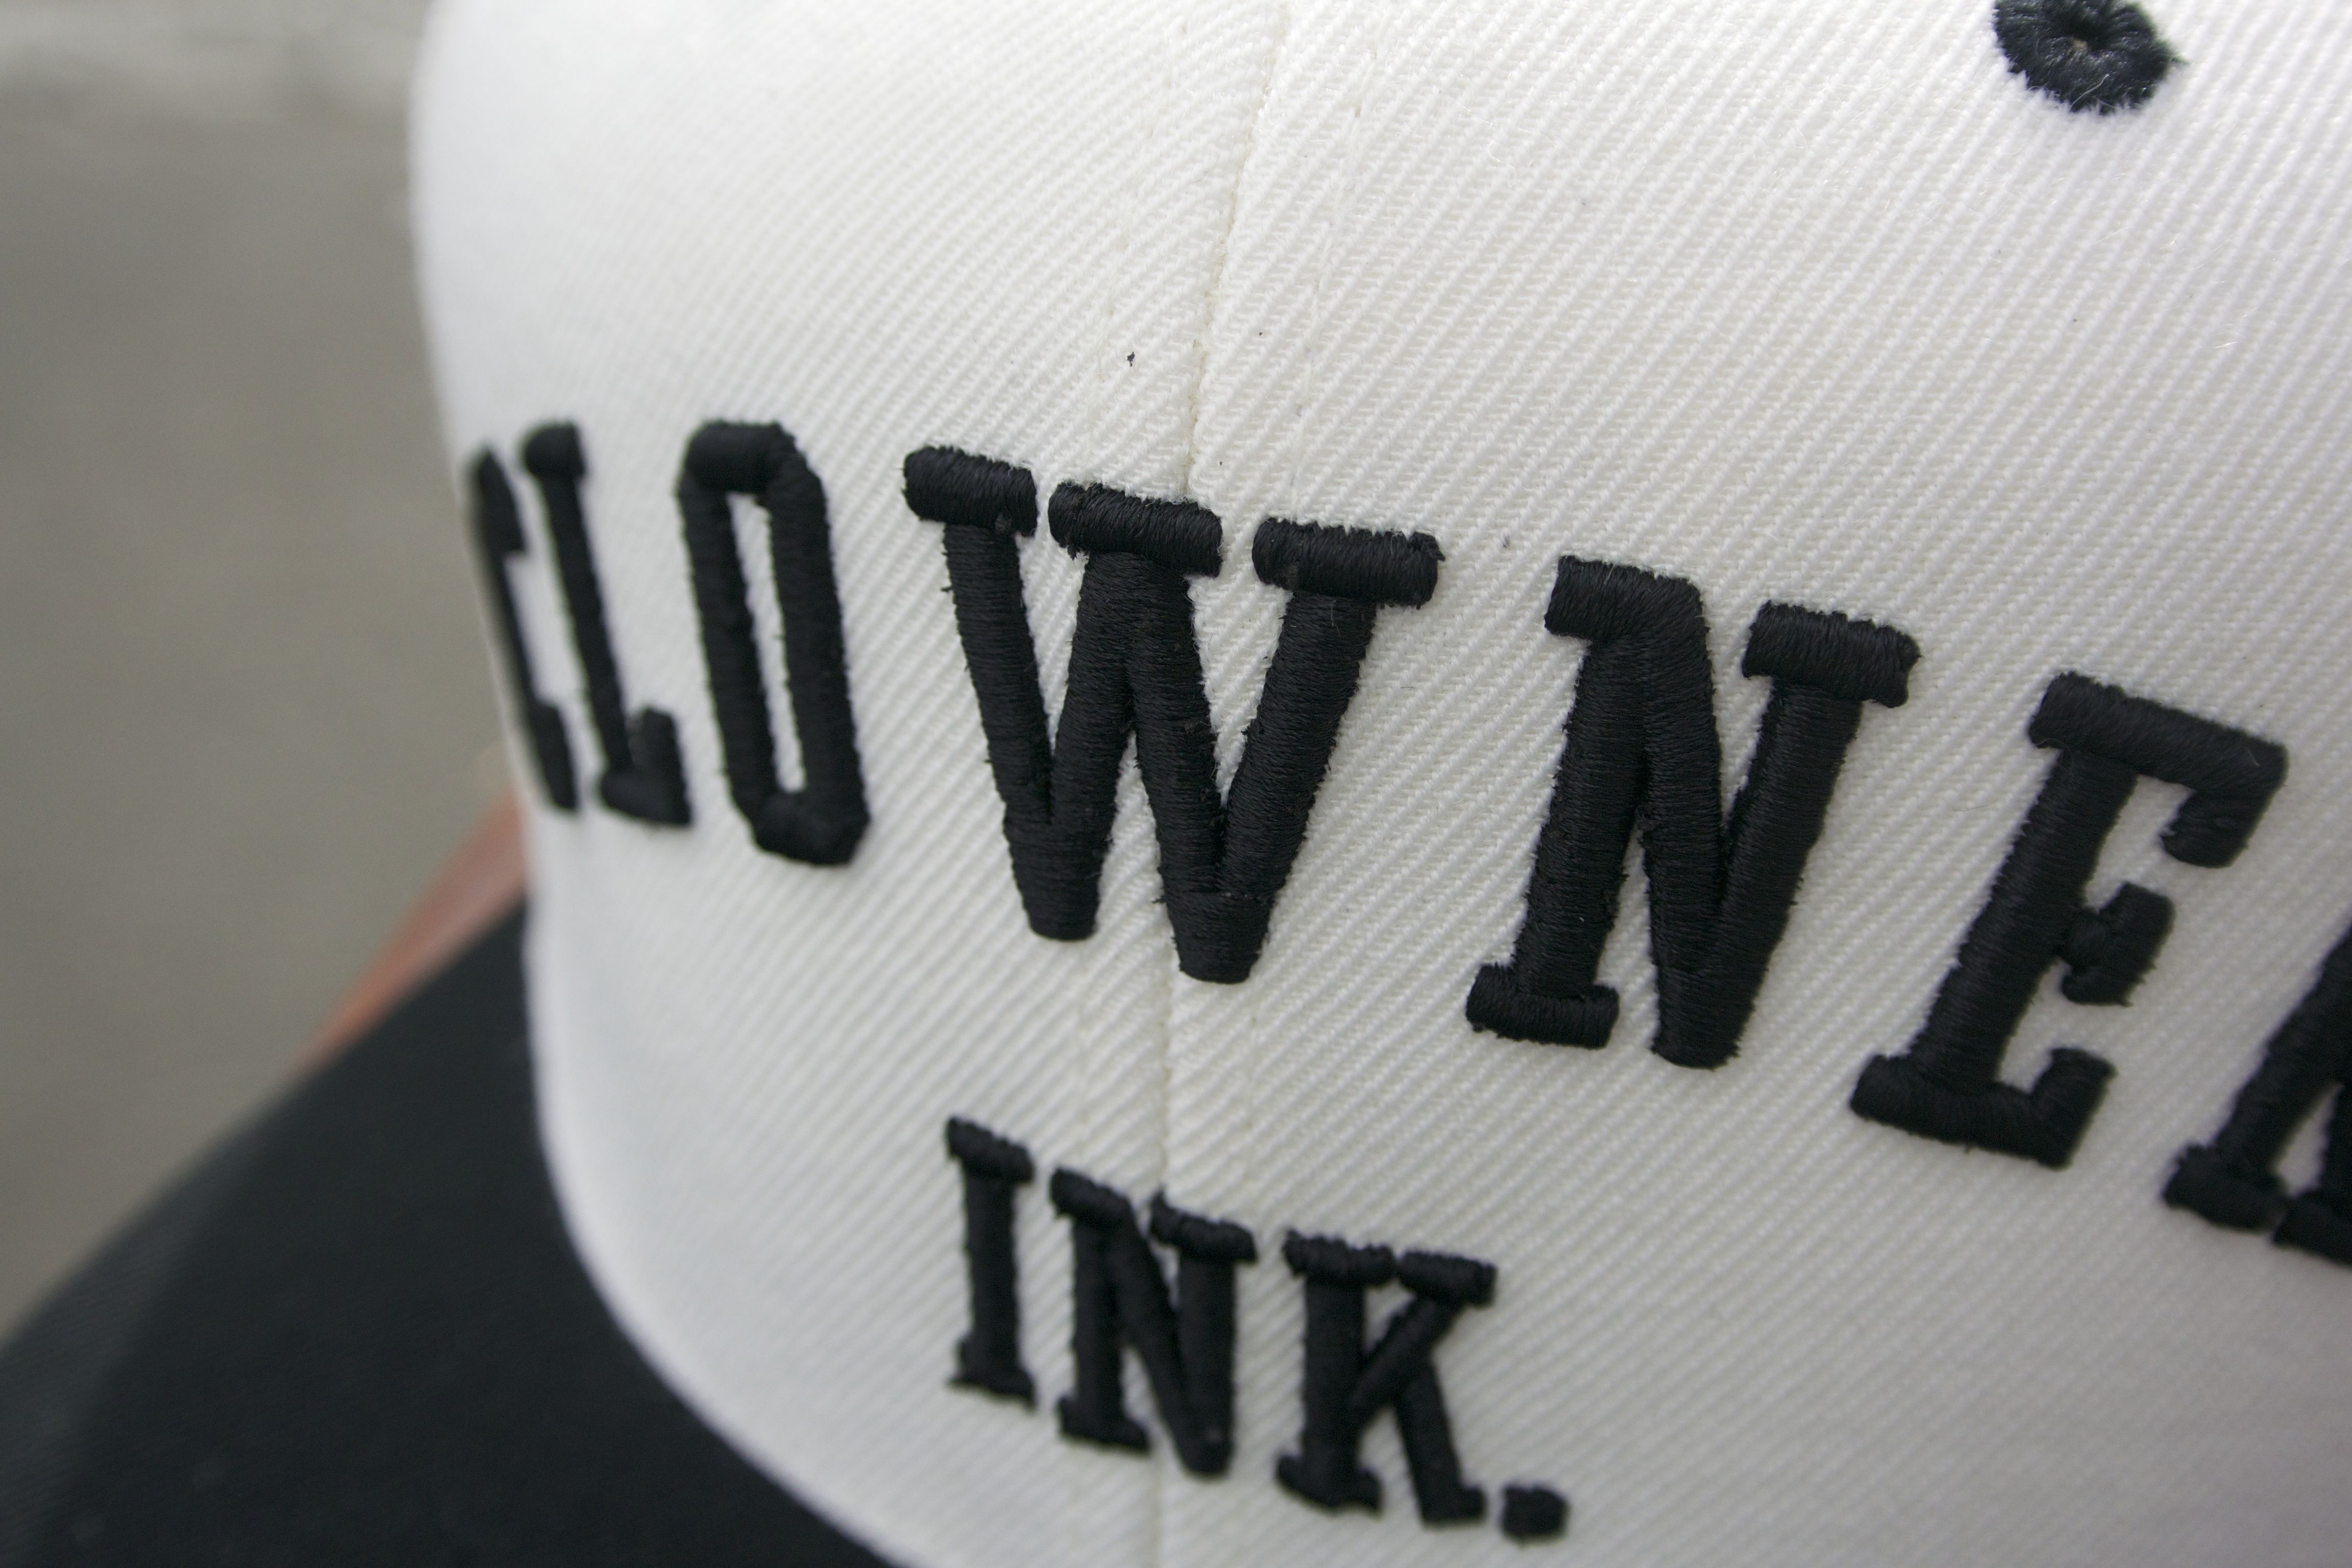 clowner_ink.jpg